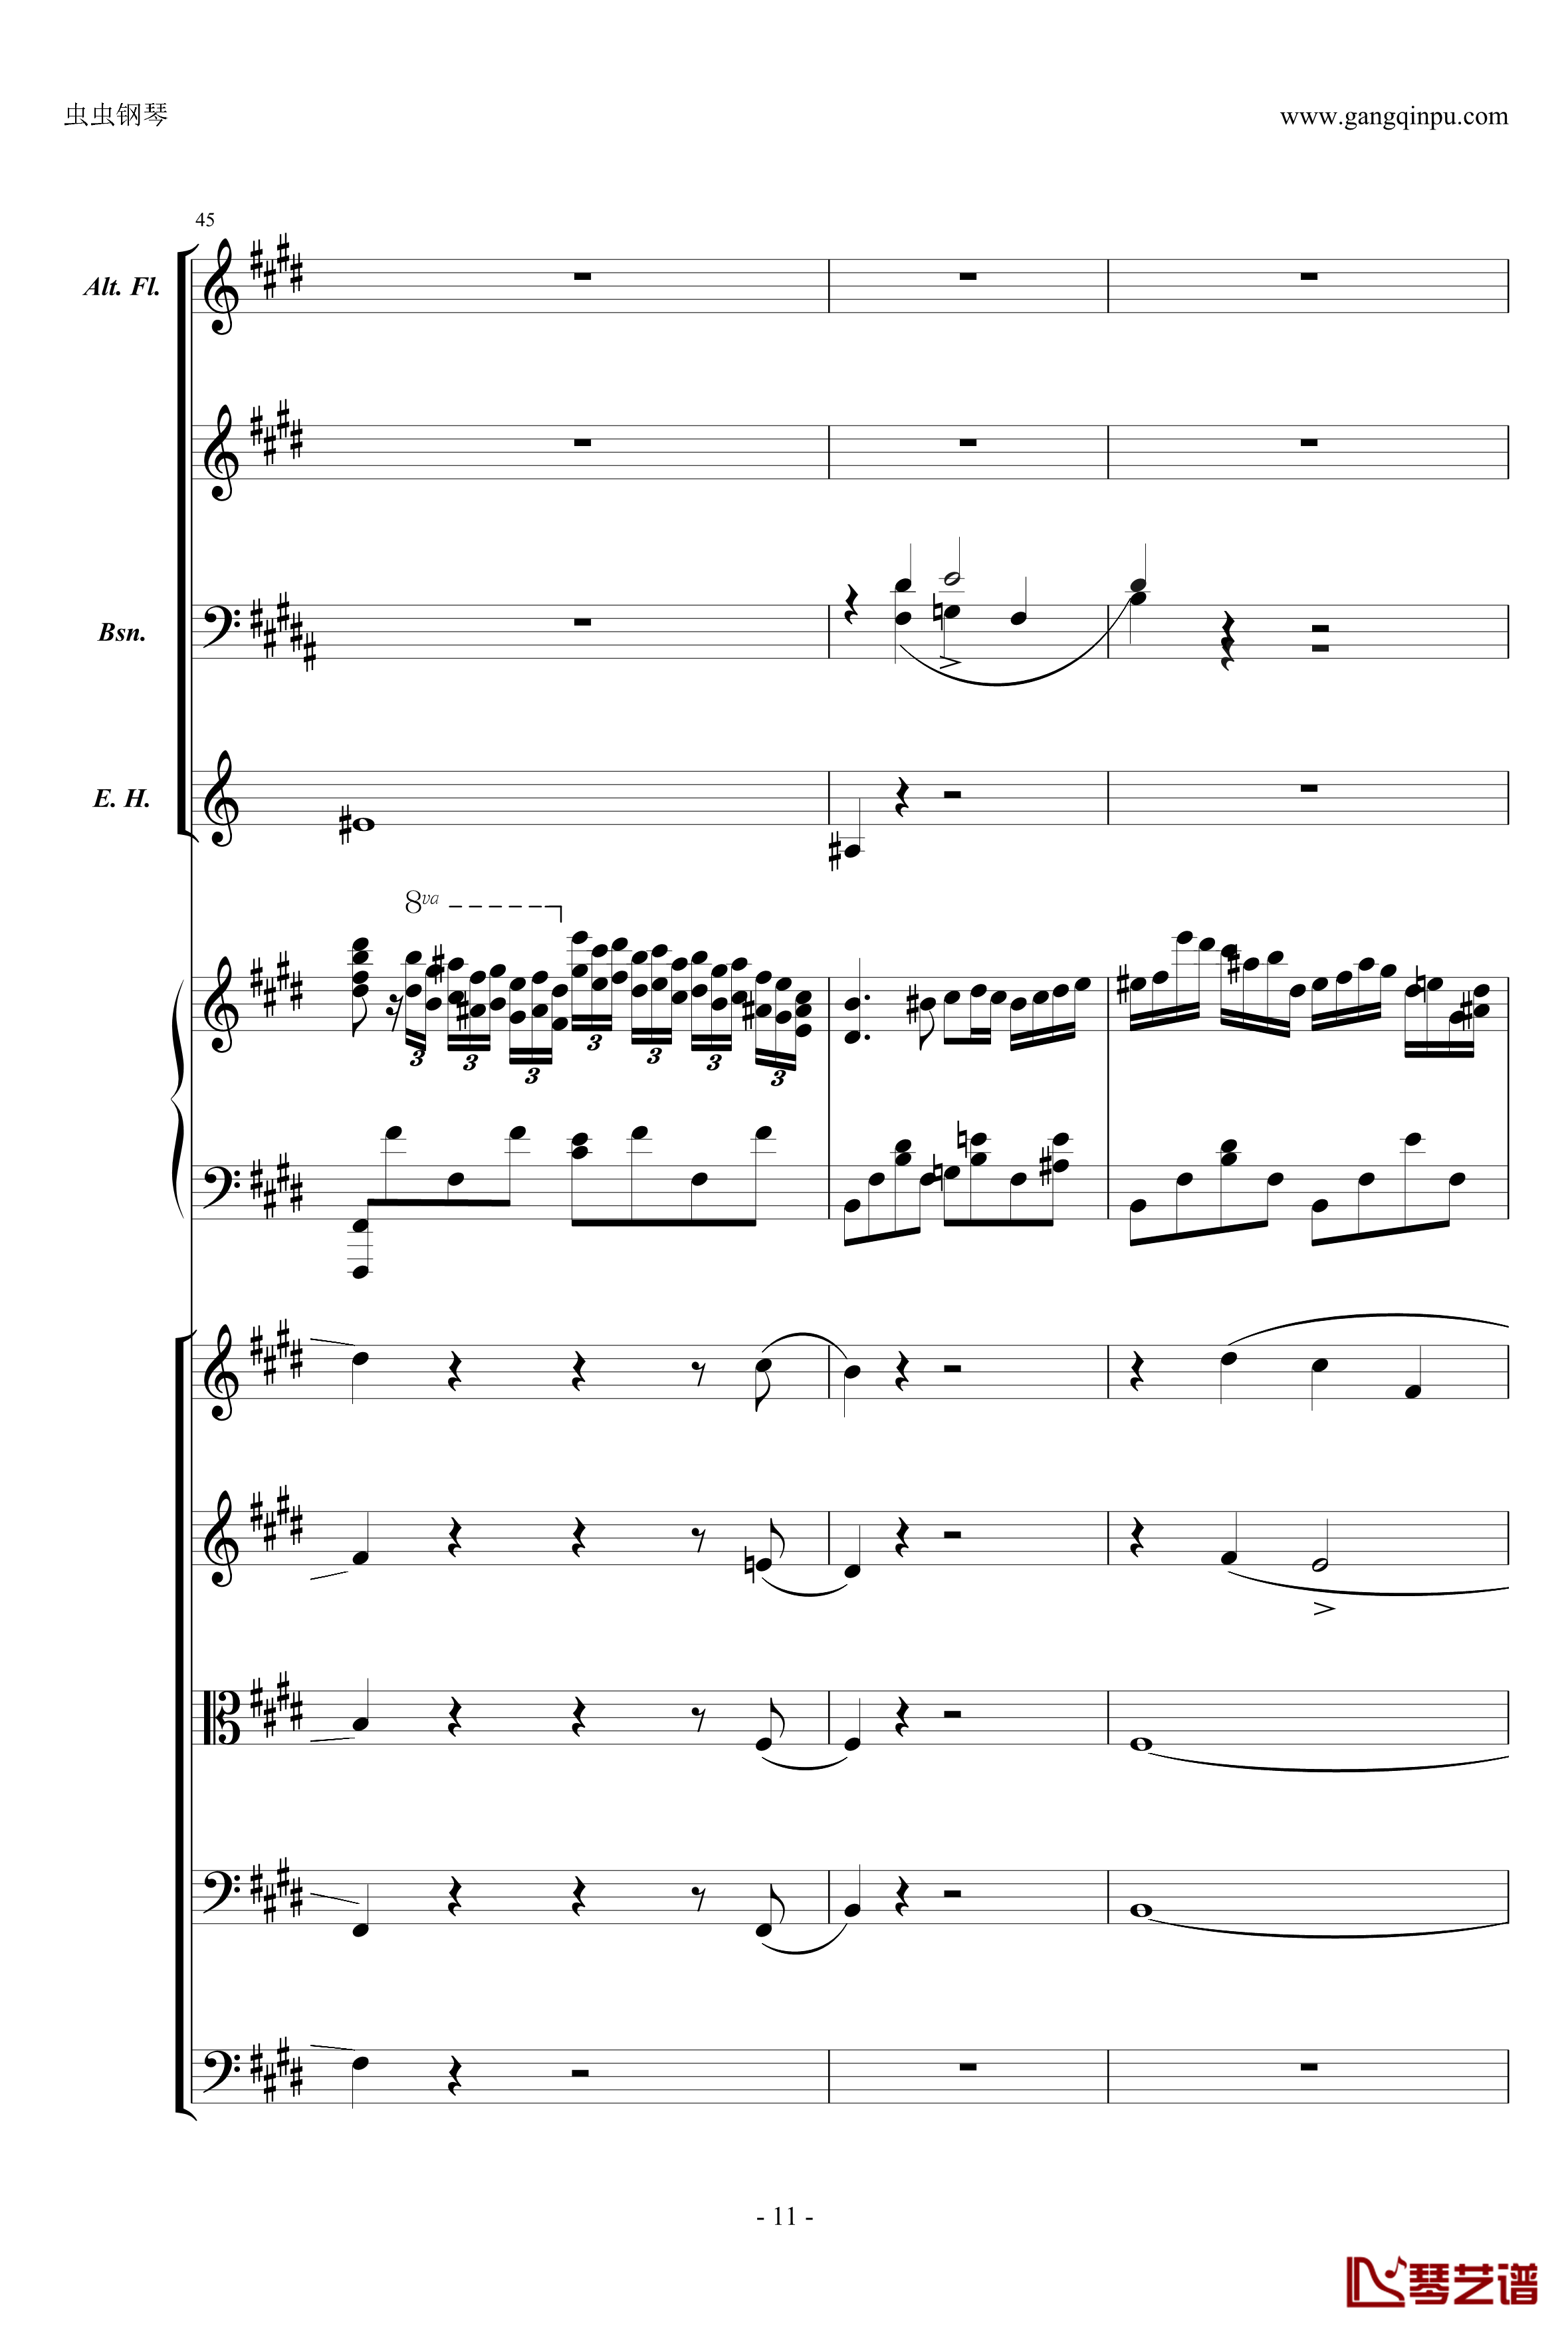 萧邦第一钢琴协奏曲第二乐章钢琴谱-肖邦-chopin11